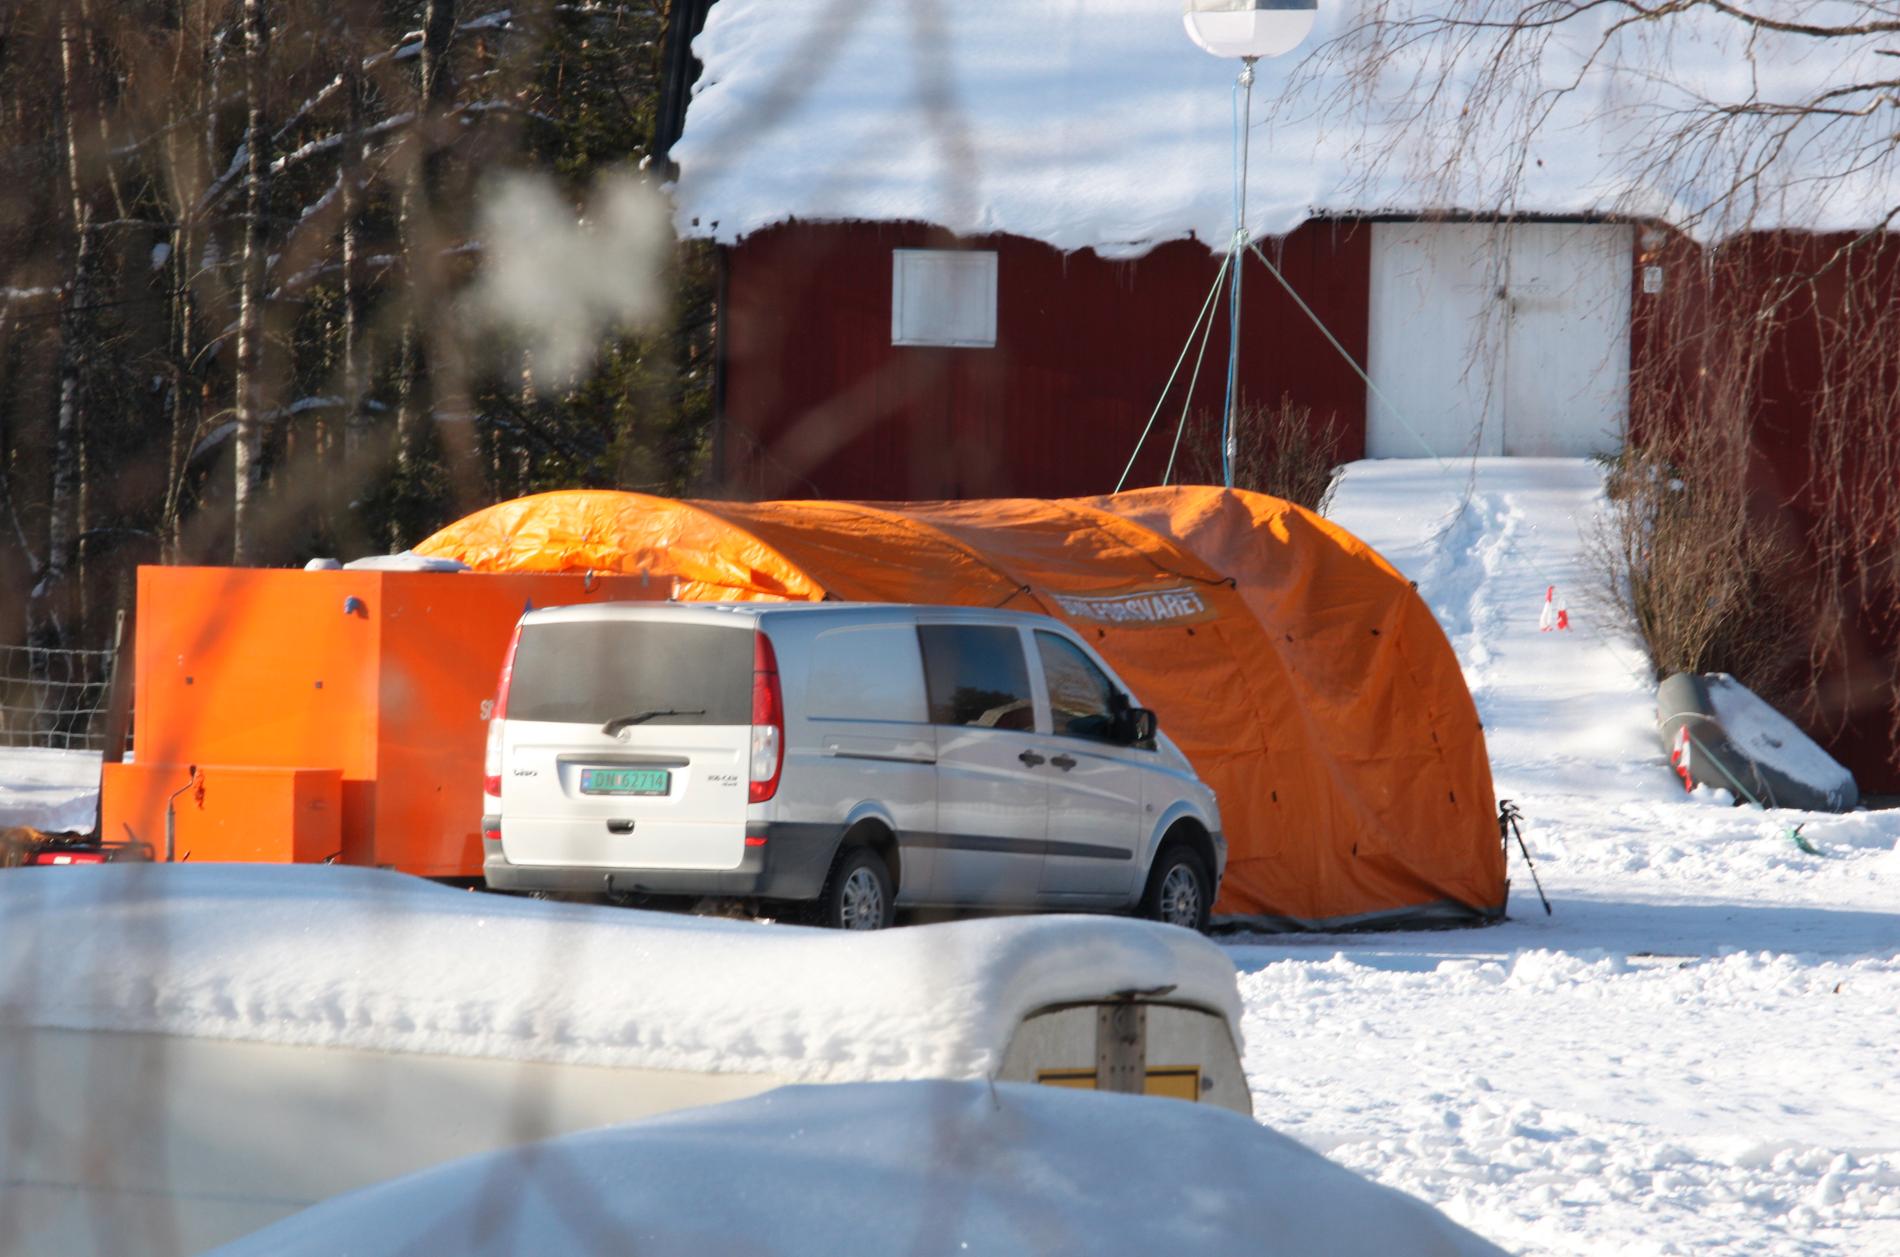 Et oransje telt er satt opp på gårdsbruket i Simonstad der politiet fant en død person tirsdag. Et samboerpar er siktet for forsettlig drap i saken.
Foto: Jens Holm / Stringerfoto / NTB scanpix